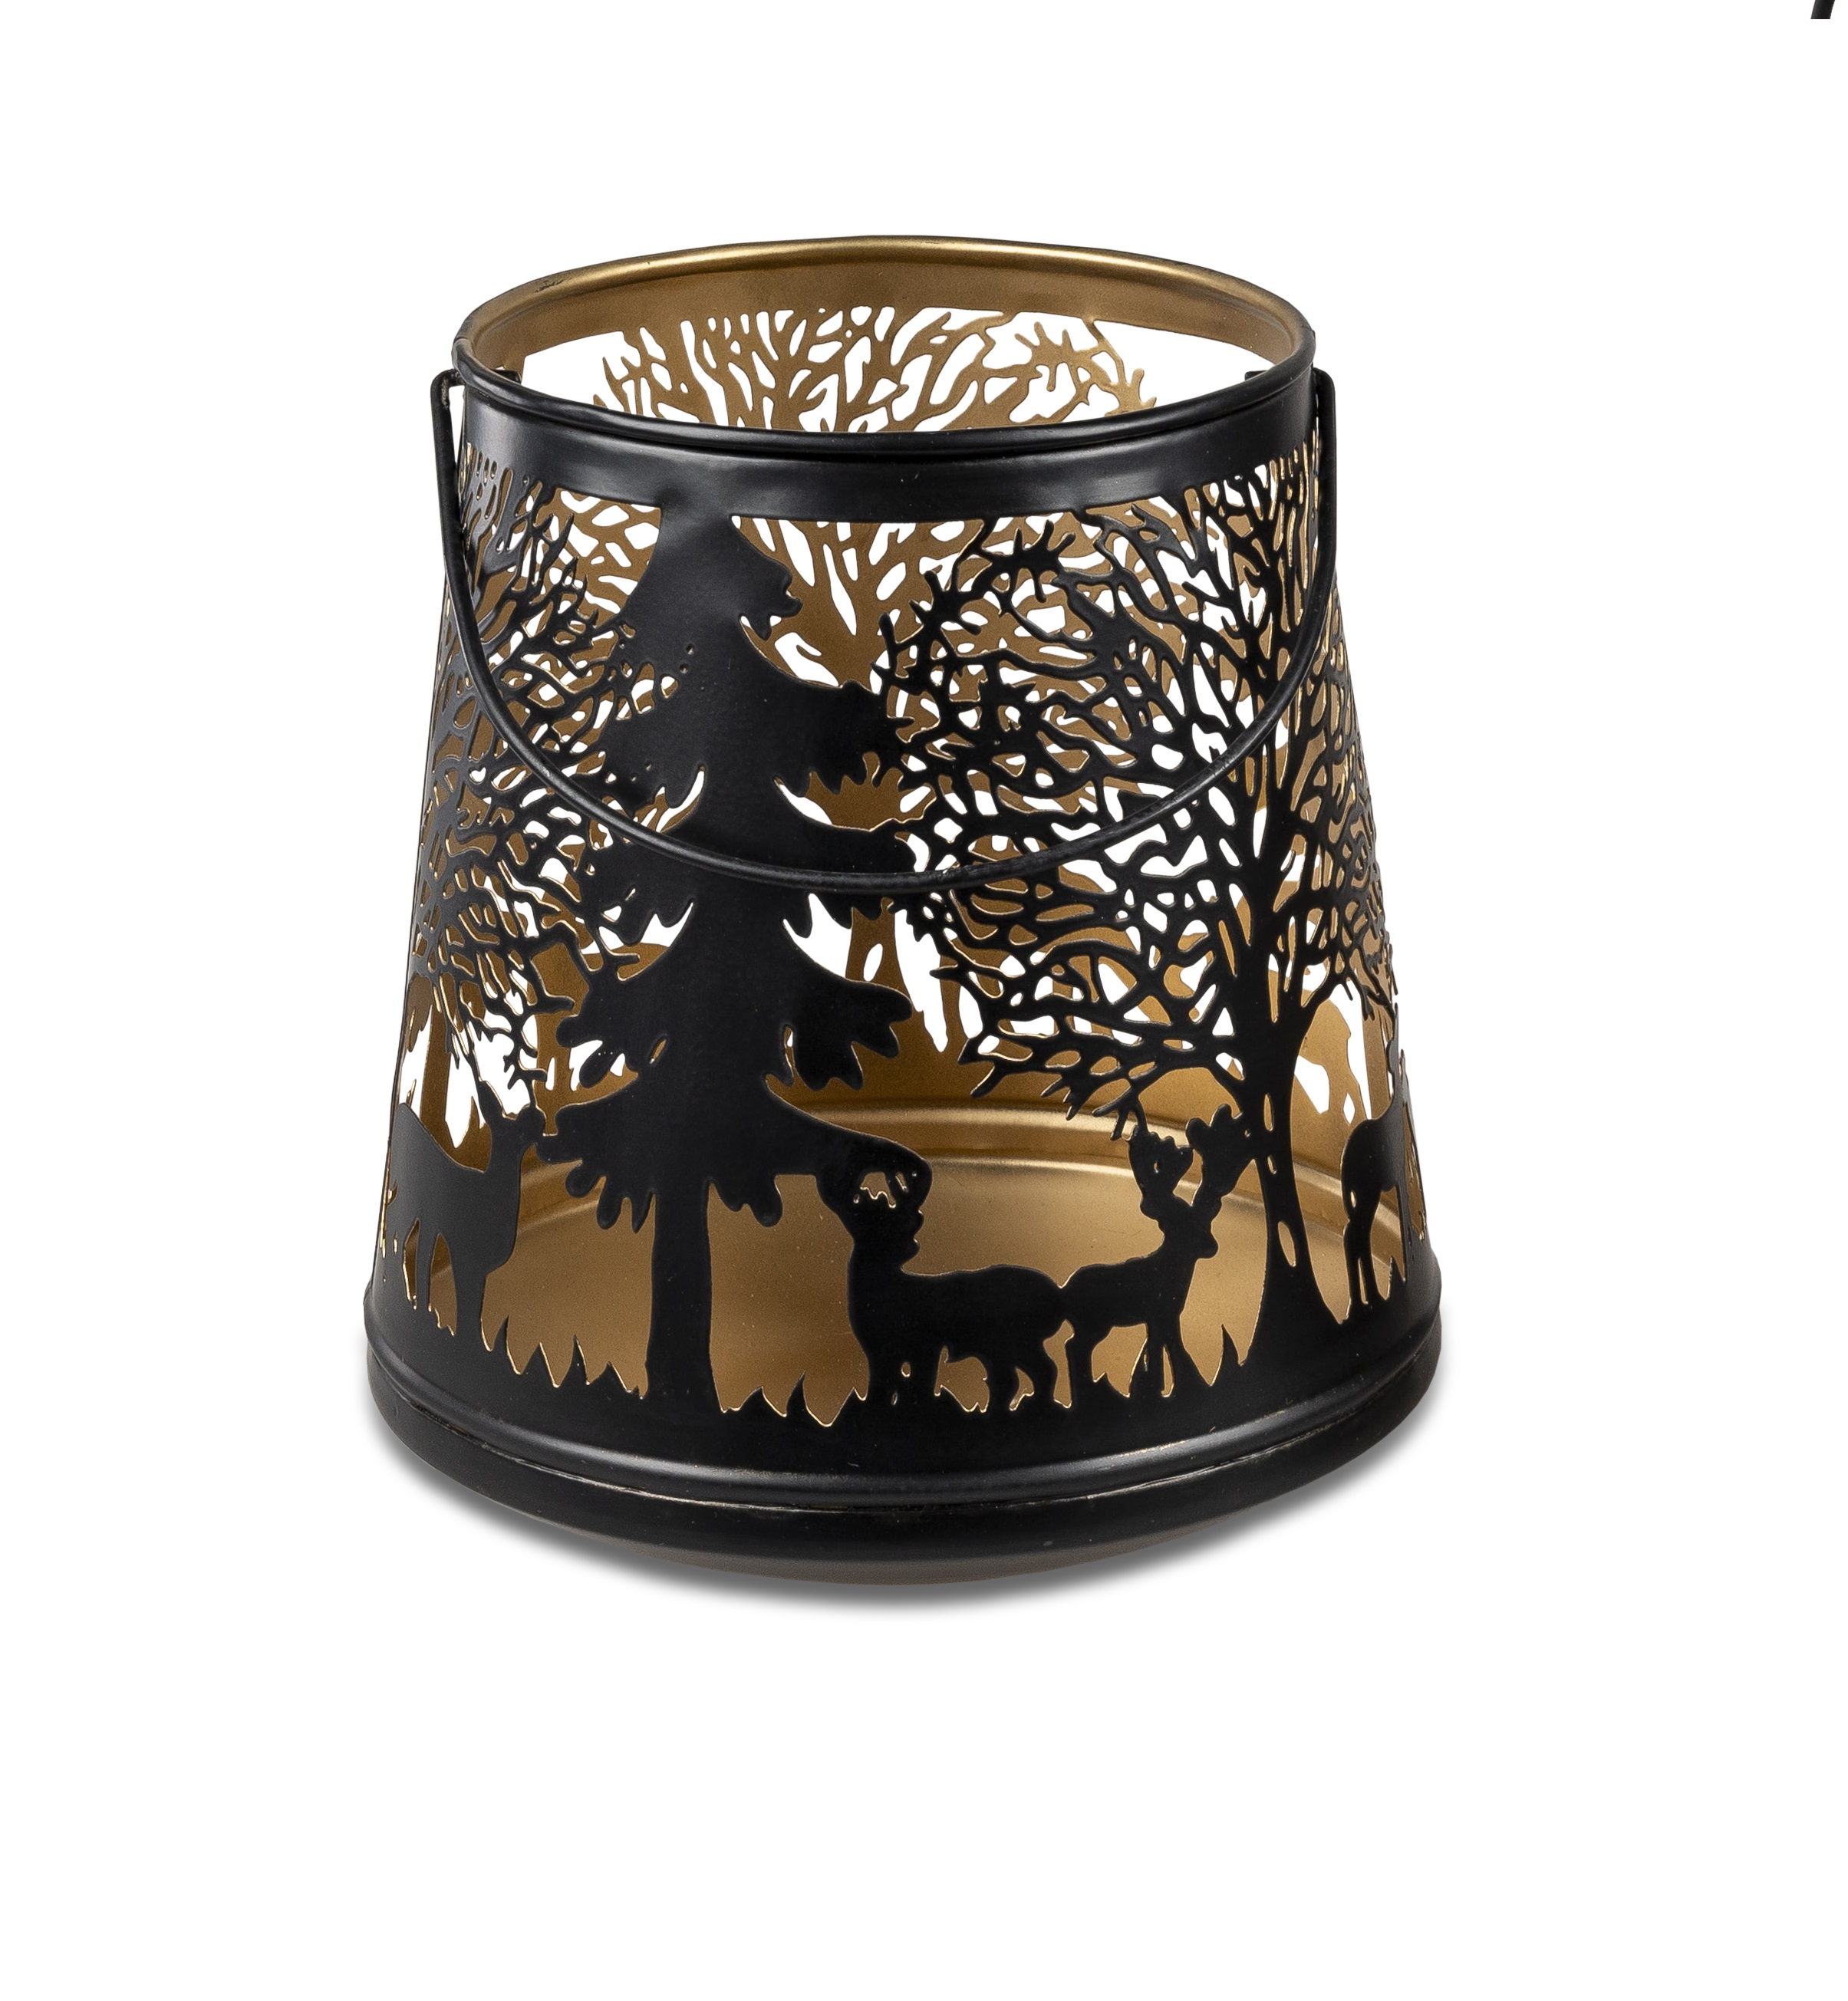 Deko Windlicht schwarz-gold 20x22cm aus Metall mit Durchbruch Leuchter Kerzenhalter formano